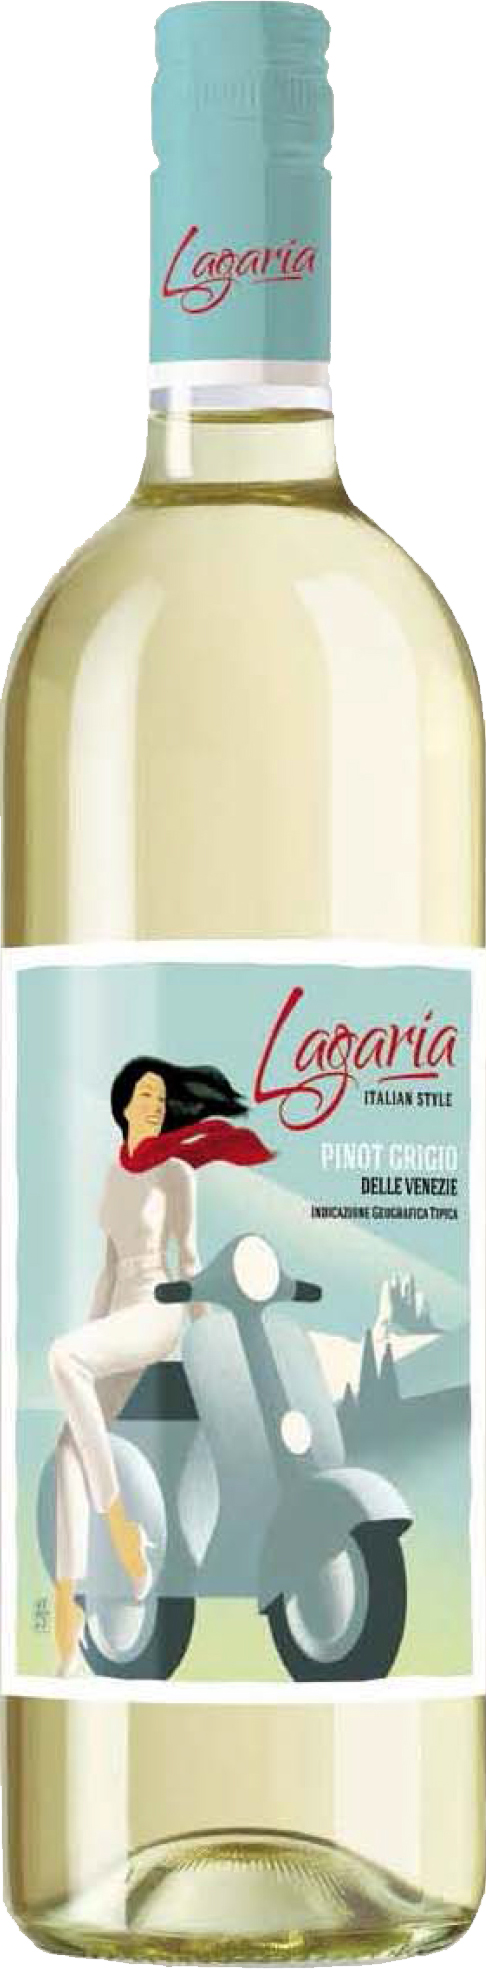 images/wine/WHITE WINE/Lagaria Pinot Grigio.jpg